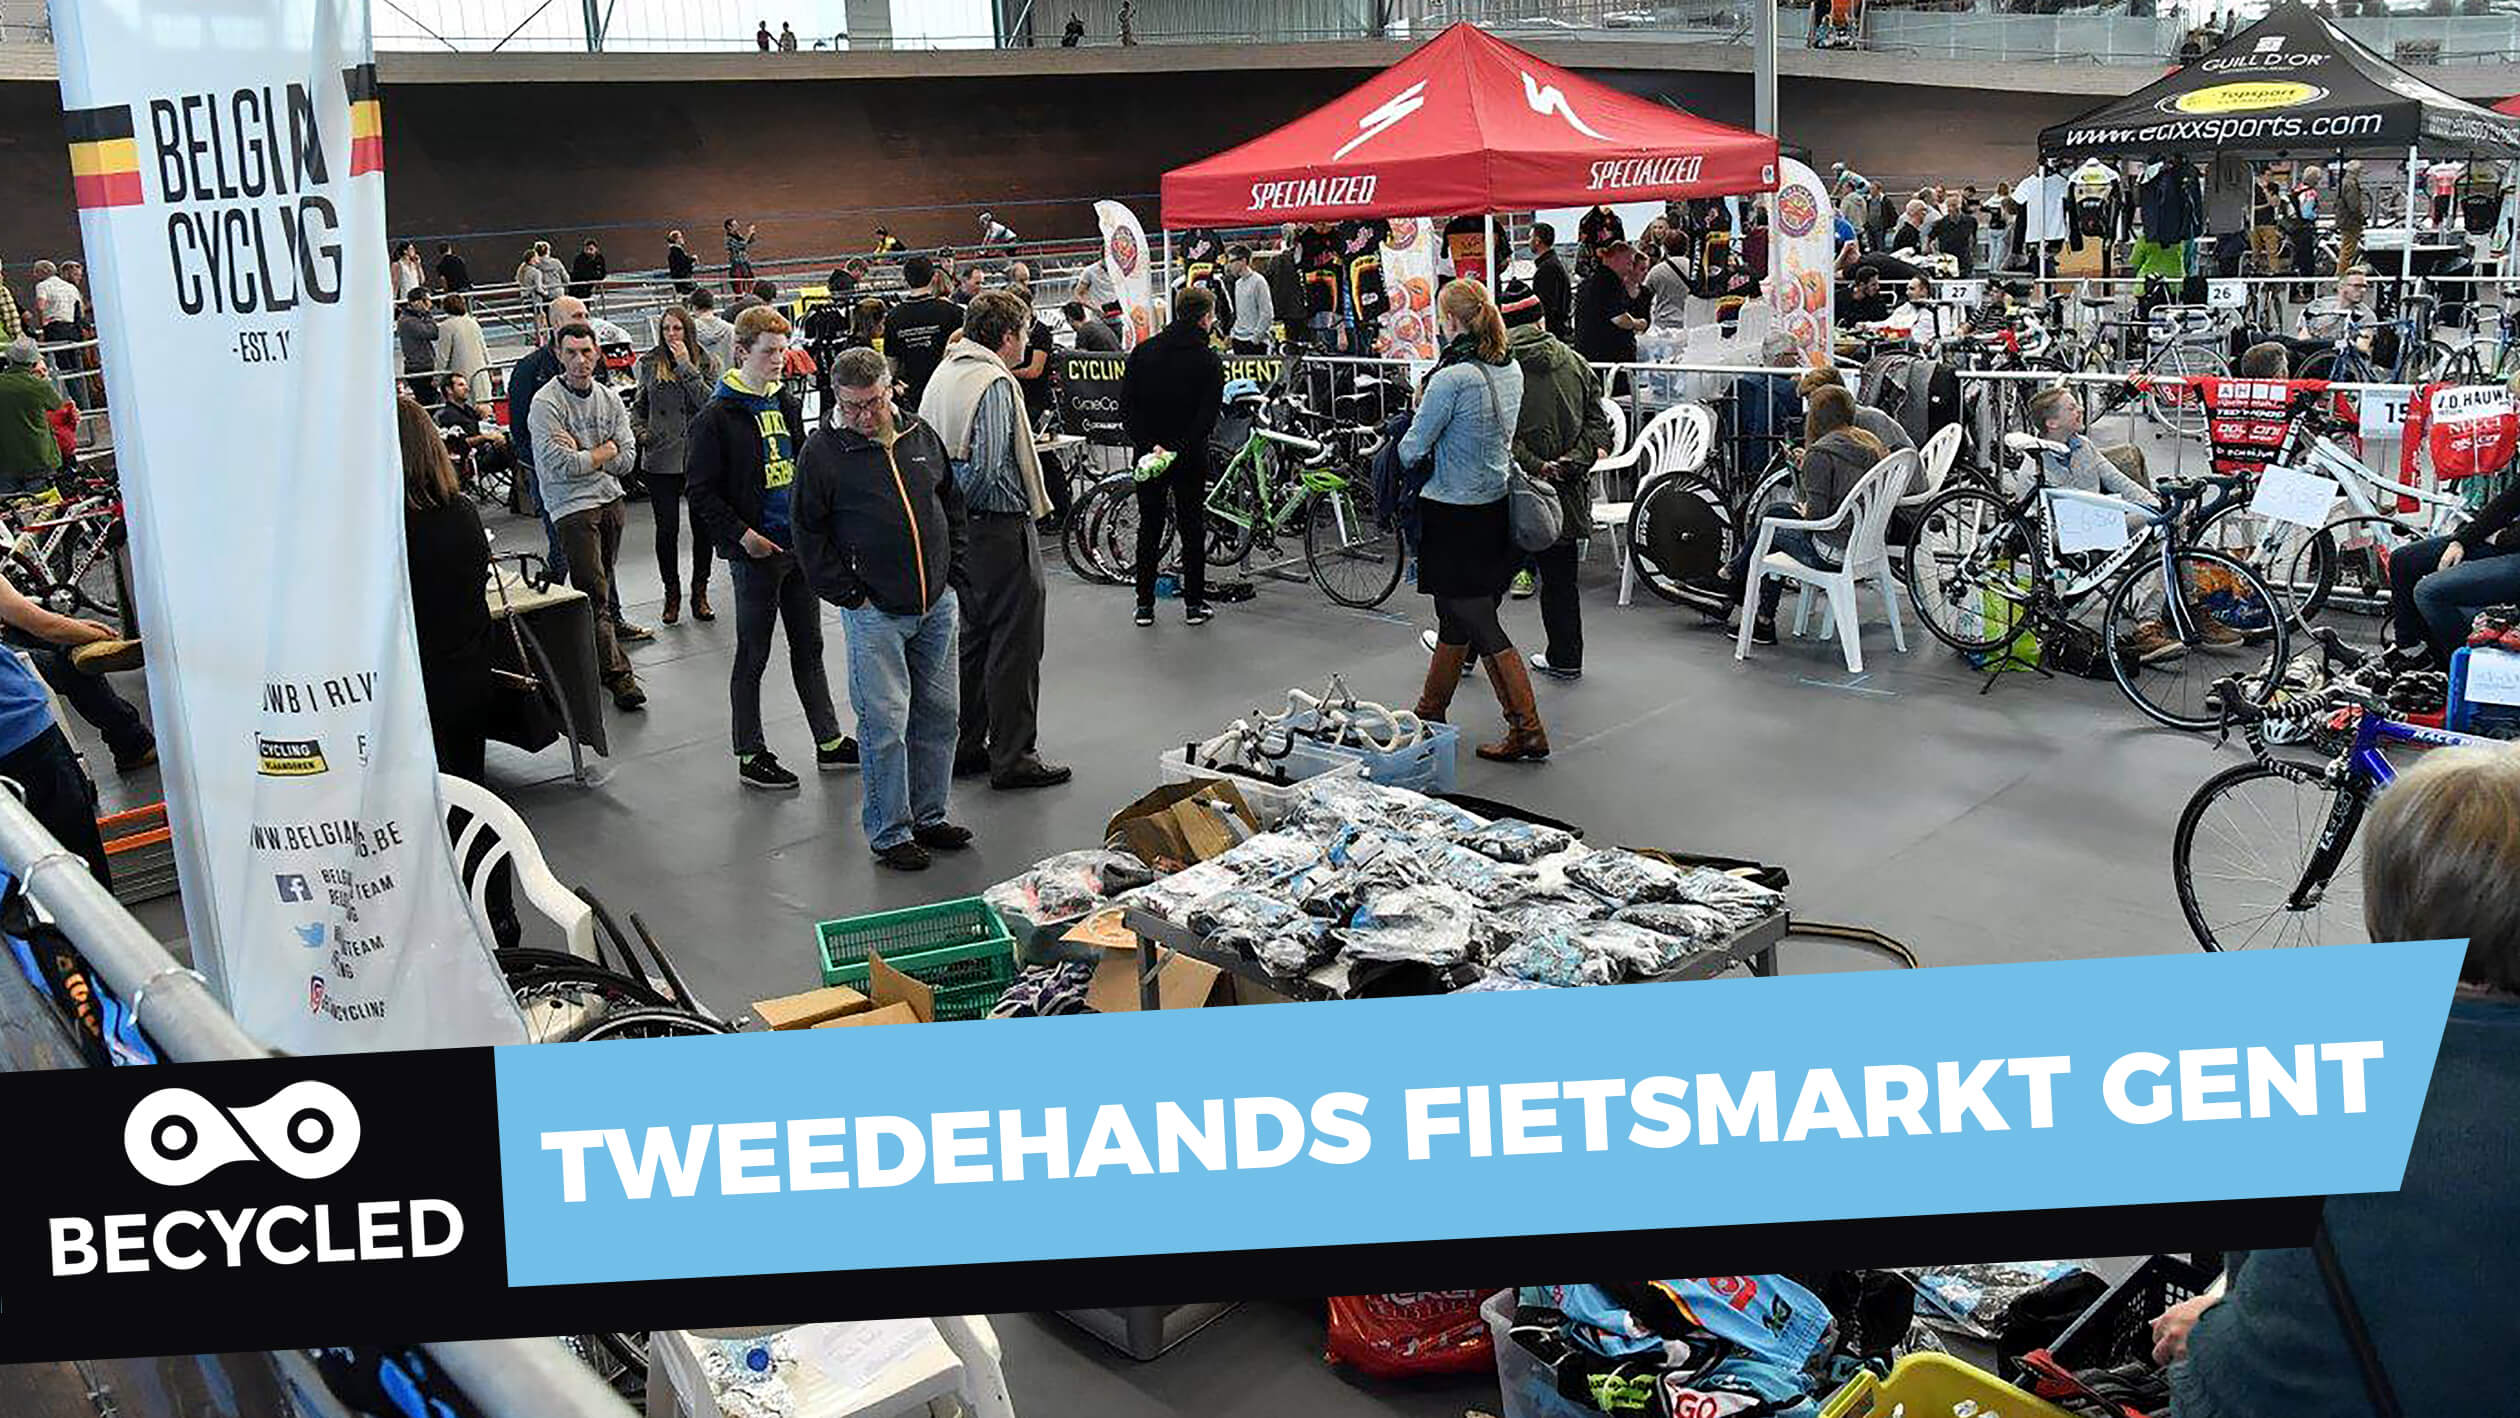 Londen geld geest Tweedehands fietsmarkt Gent | Becycled Fietsblog